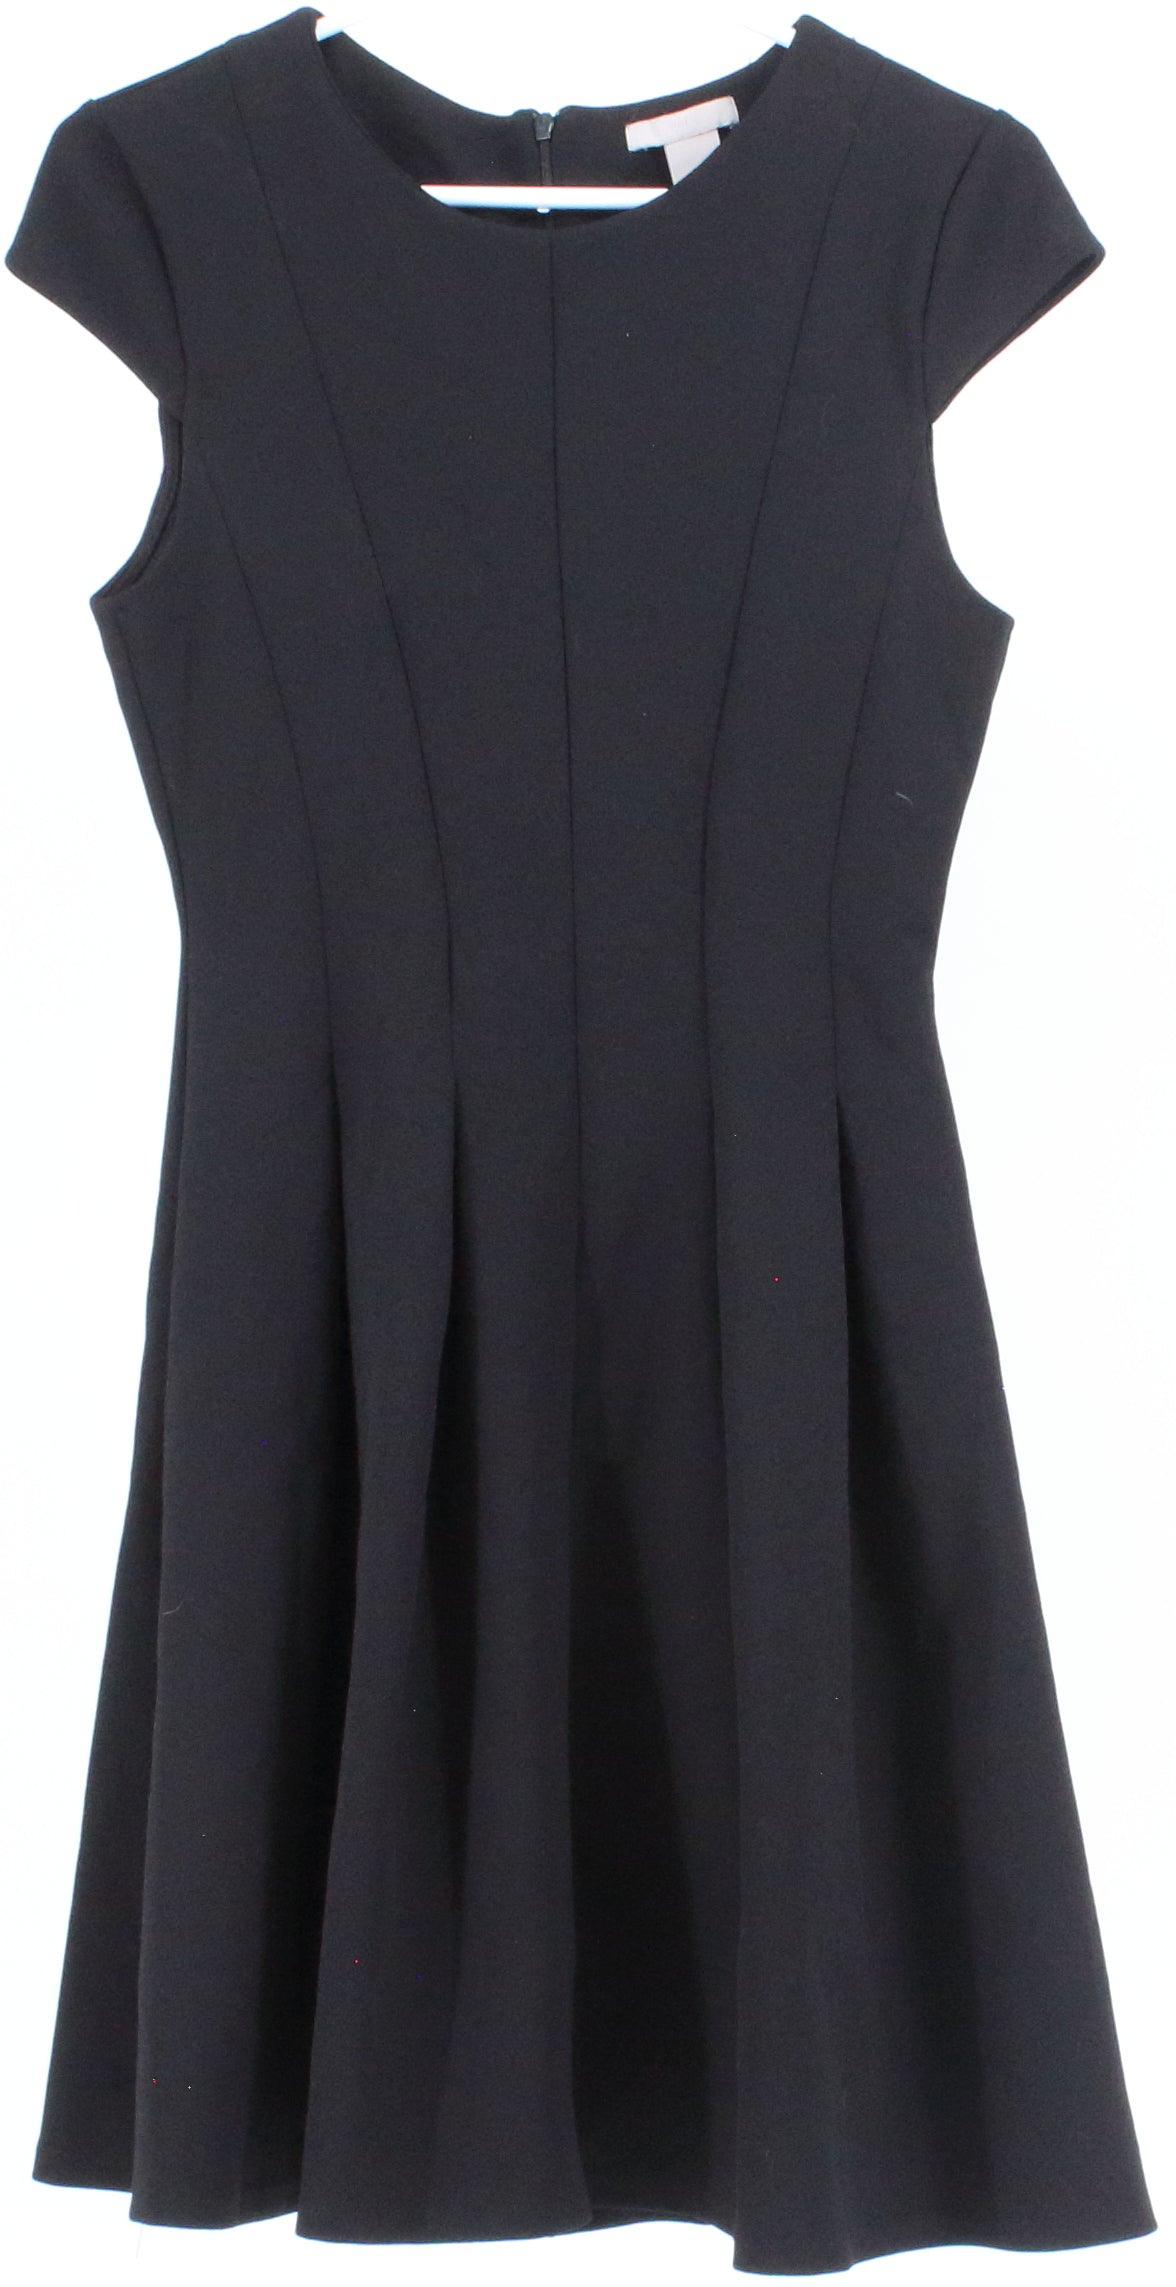 H&M Black Pleat Dress